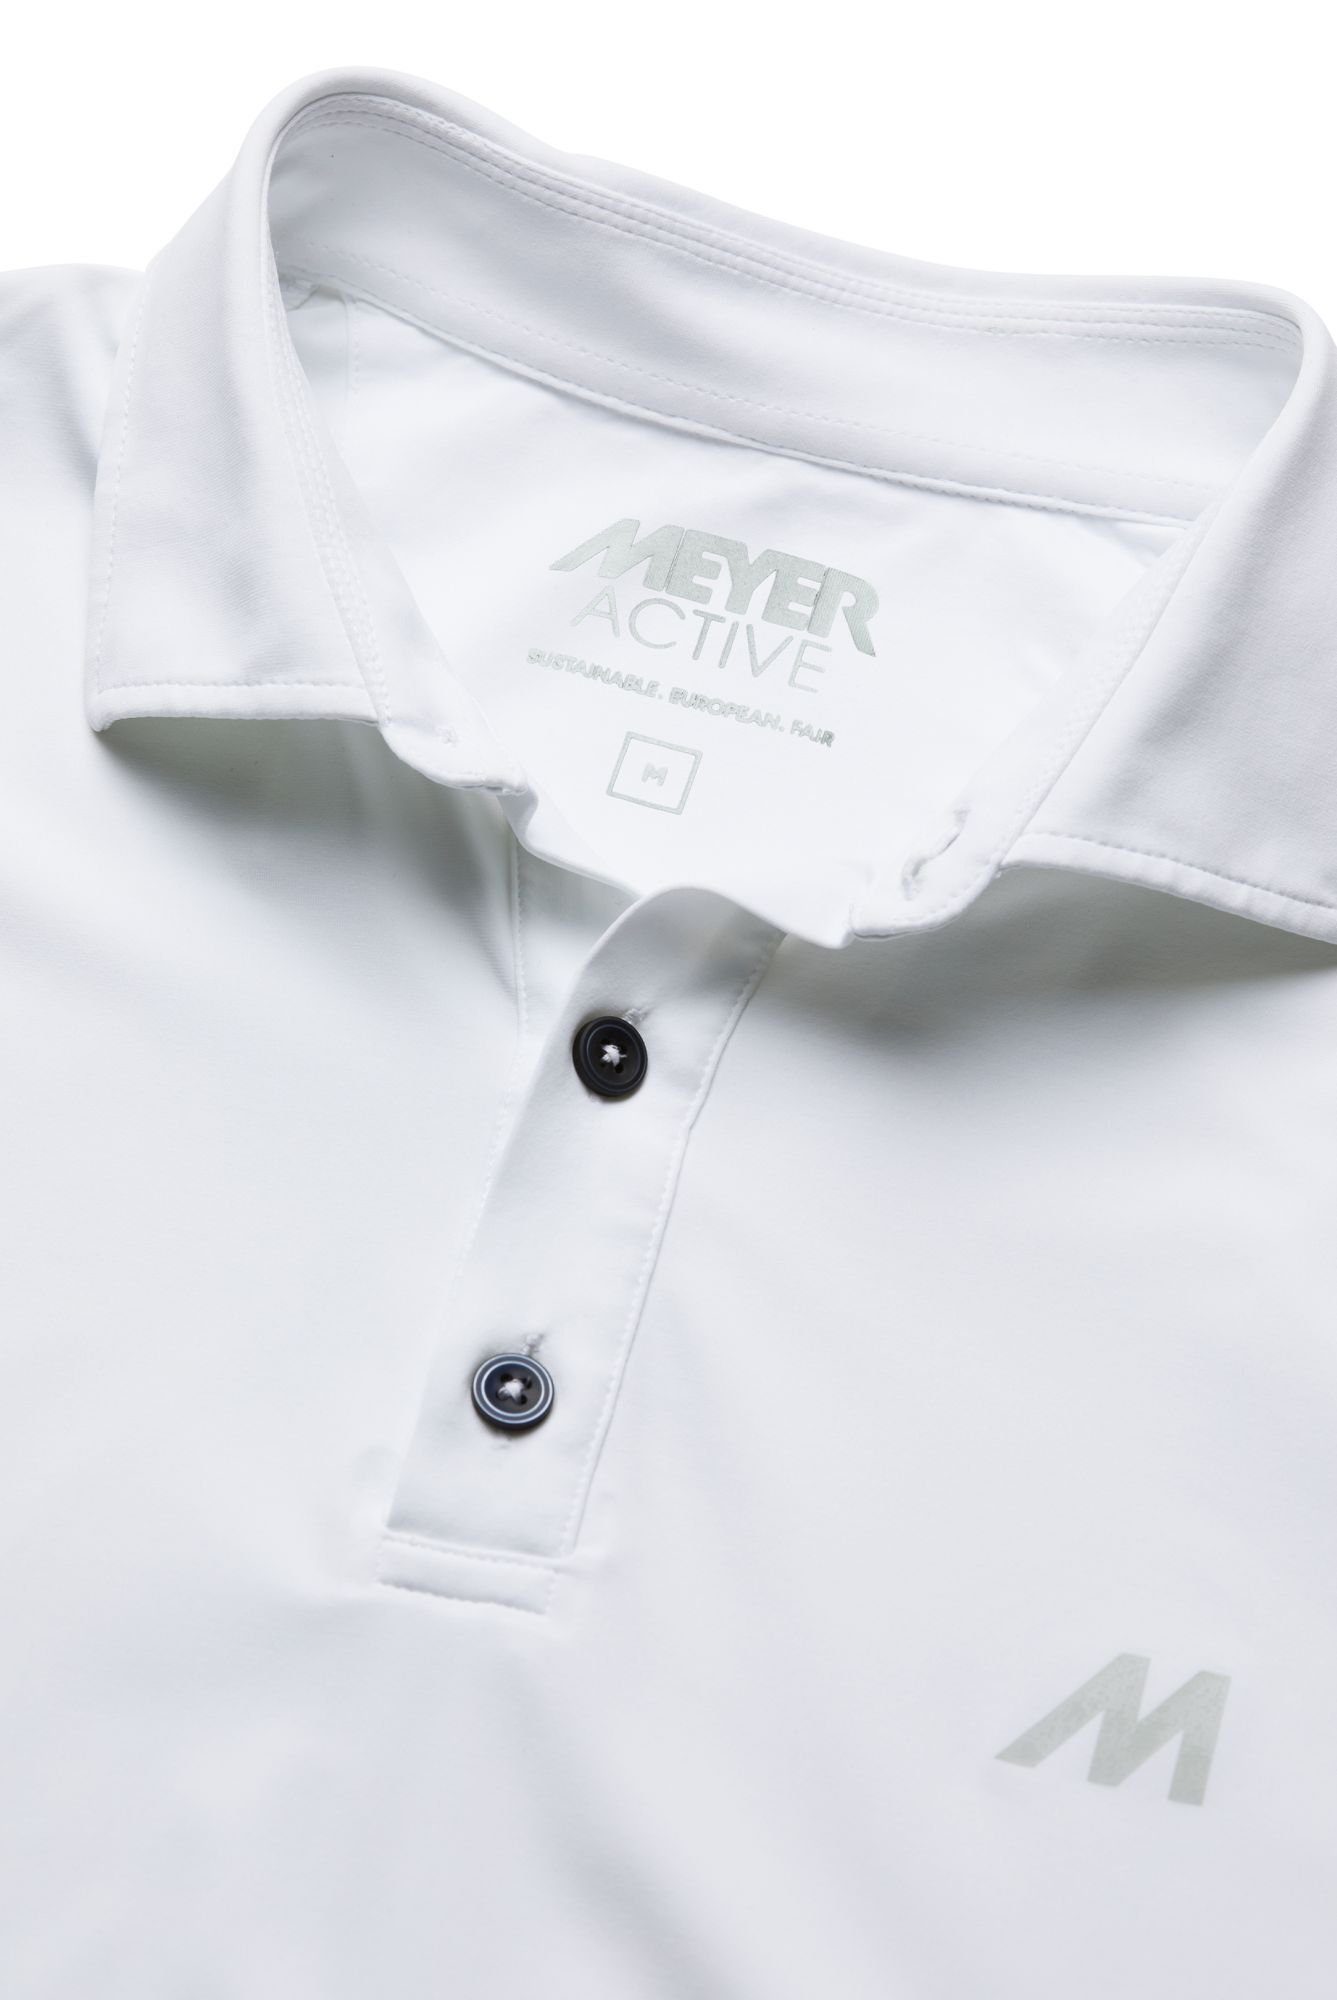 Tiger MEYER in white Europa Nachhaltig Poloshirt wird hergestellt